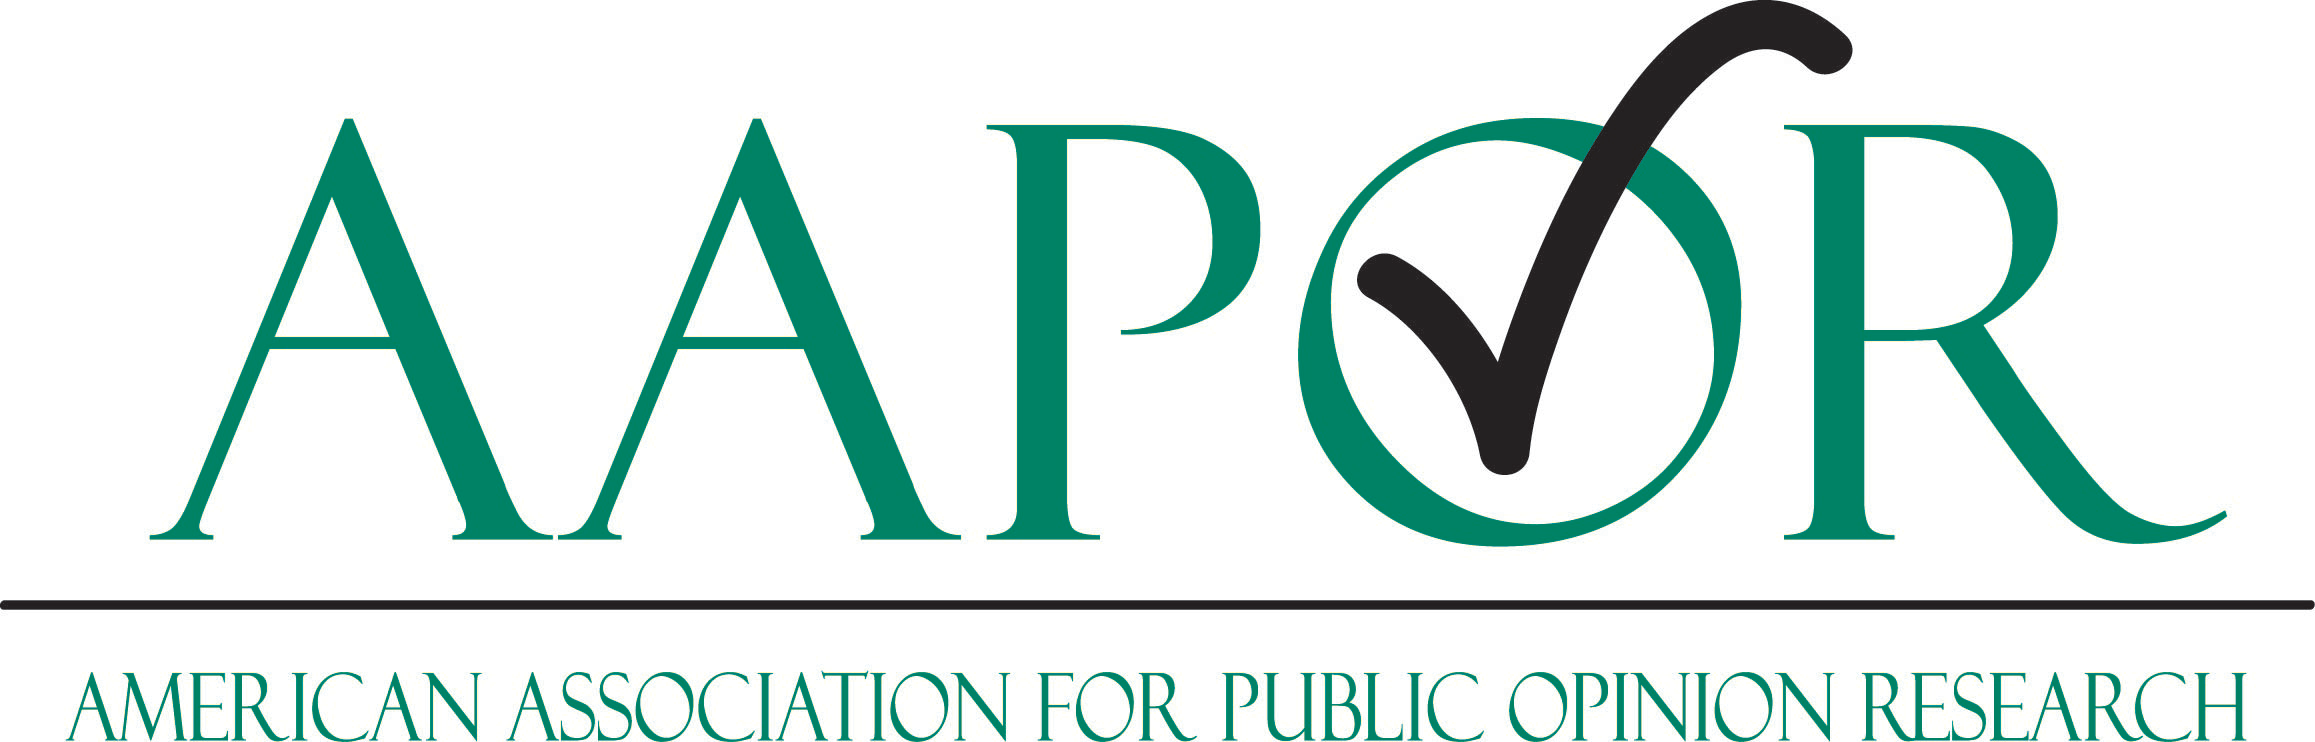 AAPOR logo